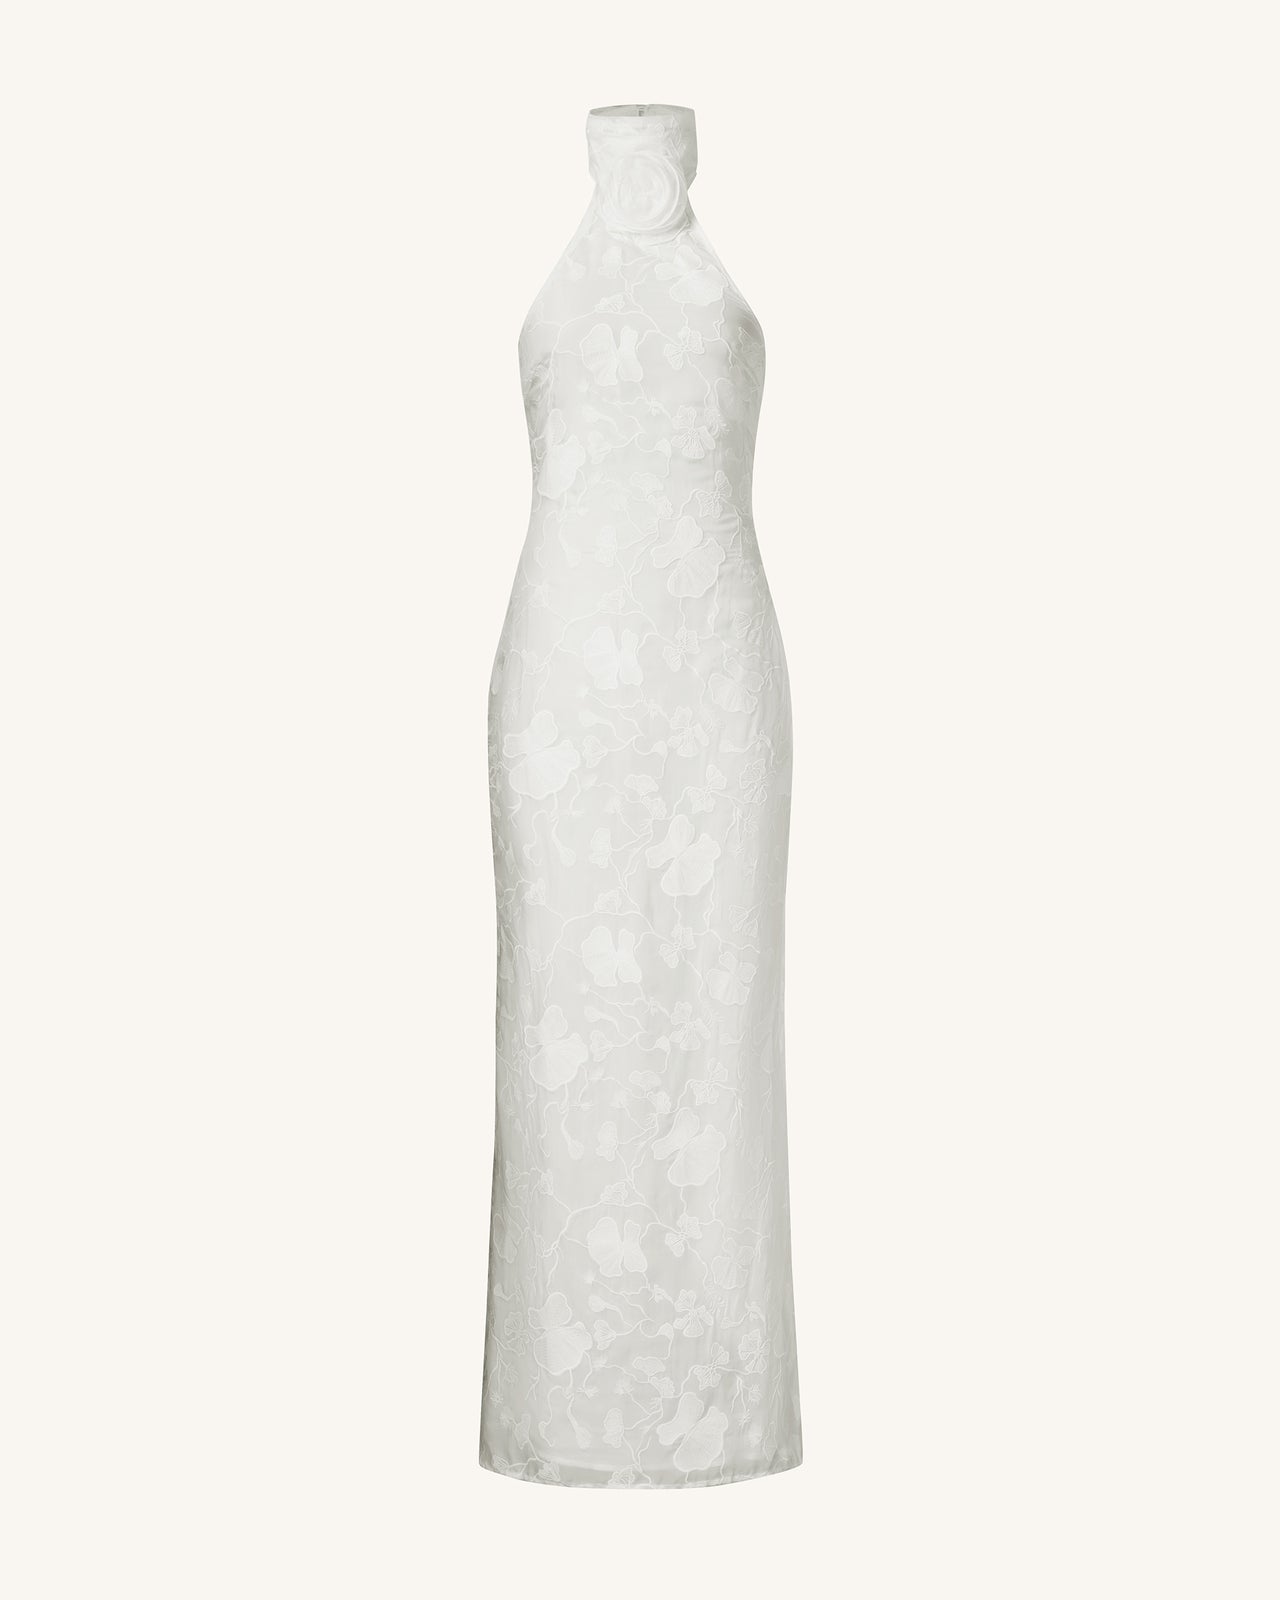 Robe longue blanche à col halter en dentelle florale Uliana - Blanc